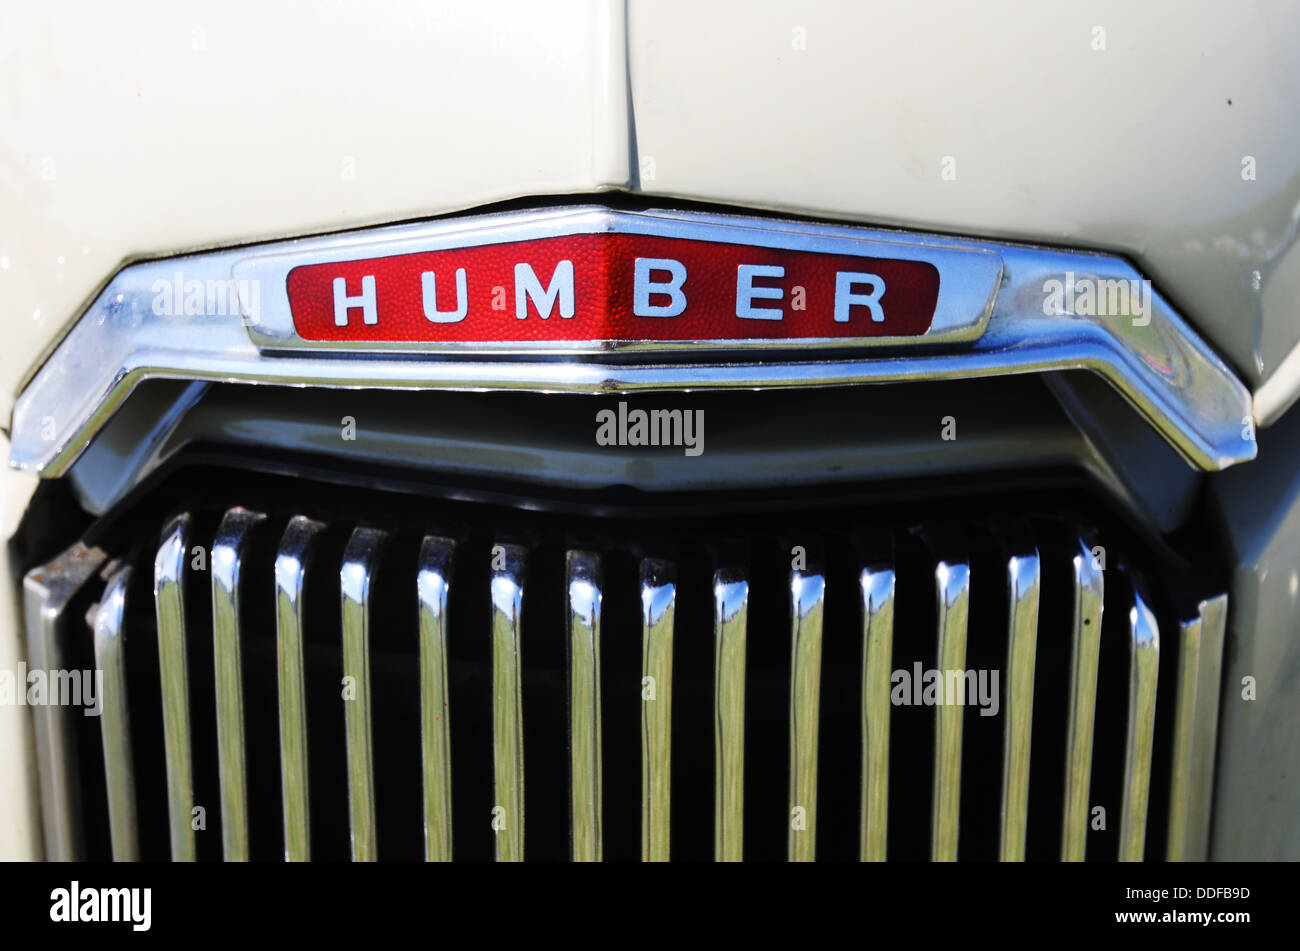 Humber classic car badge Foto Stock